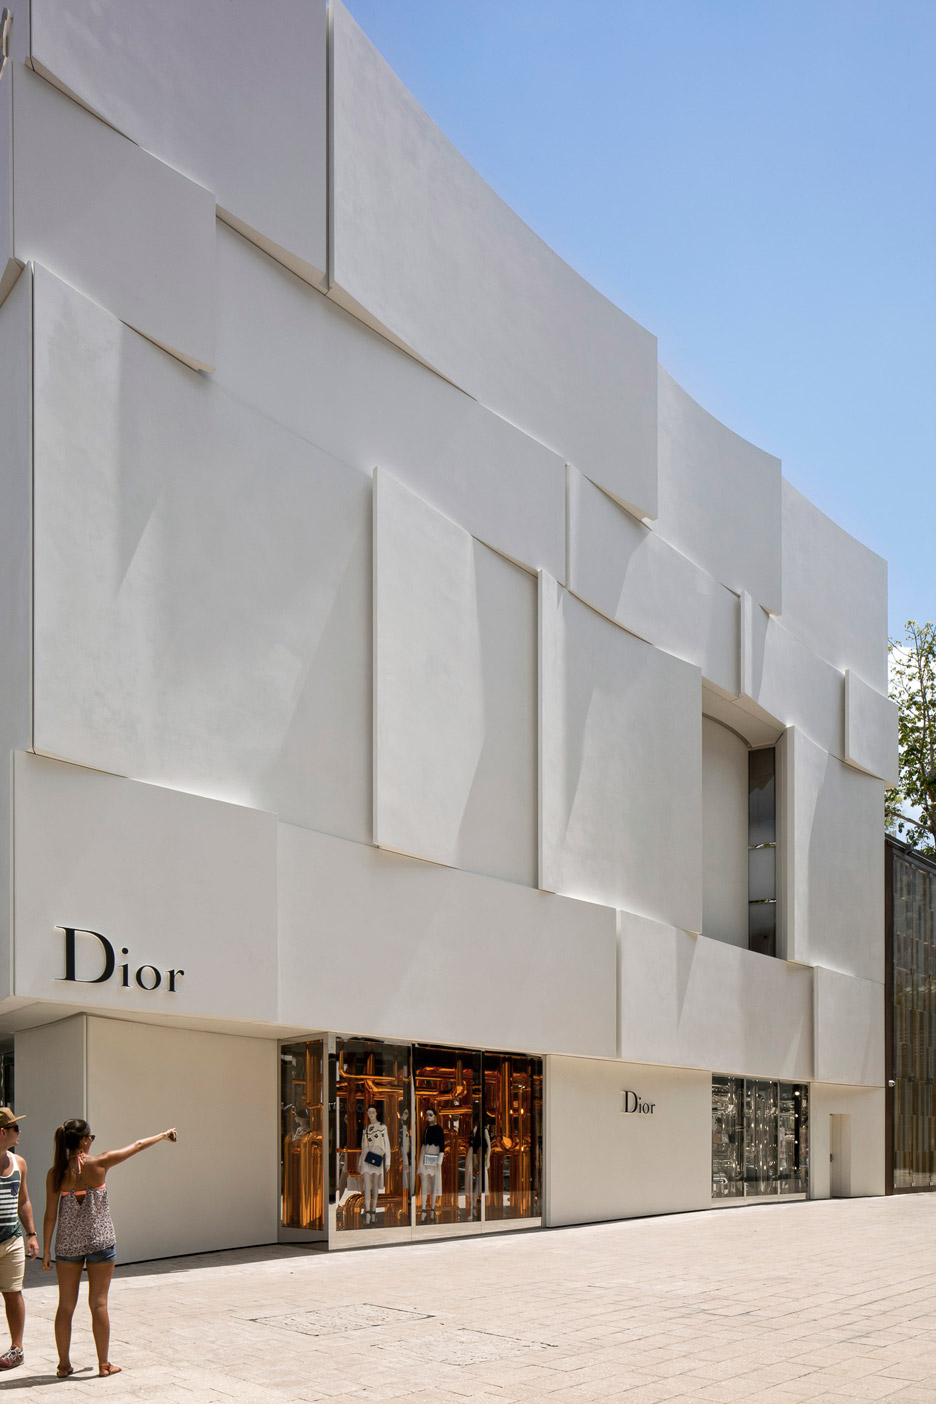 Dior shop in Miami by Barbarito Bancel